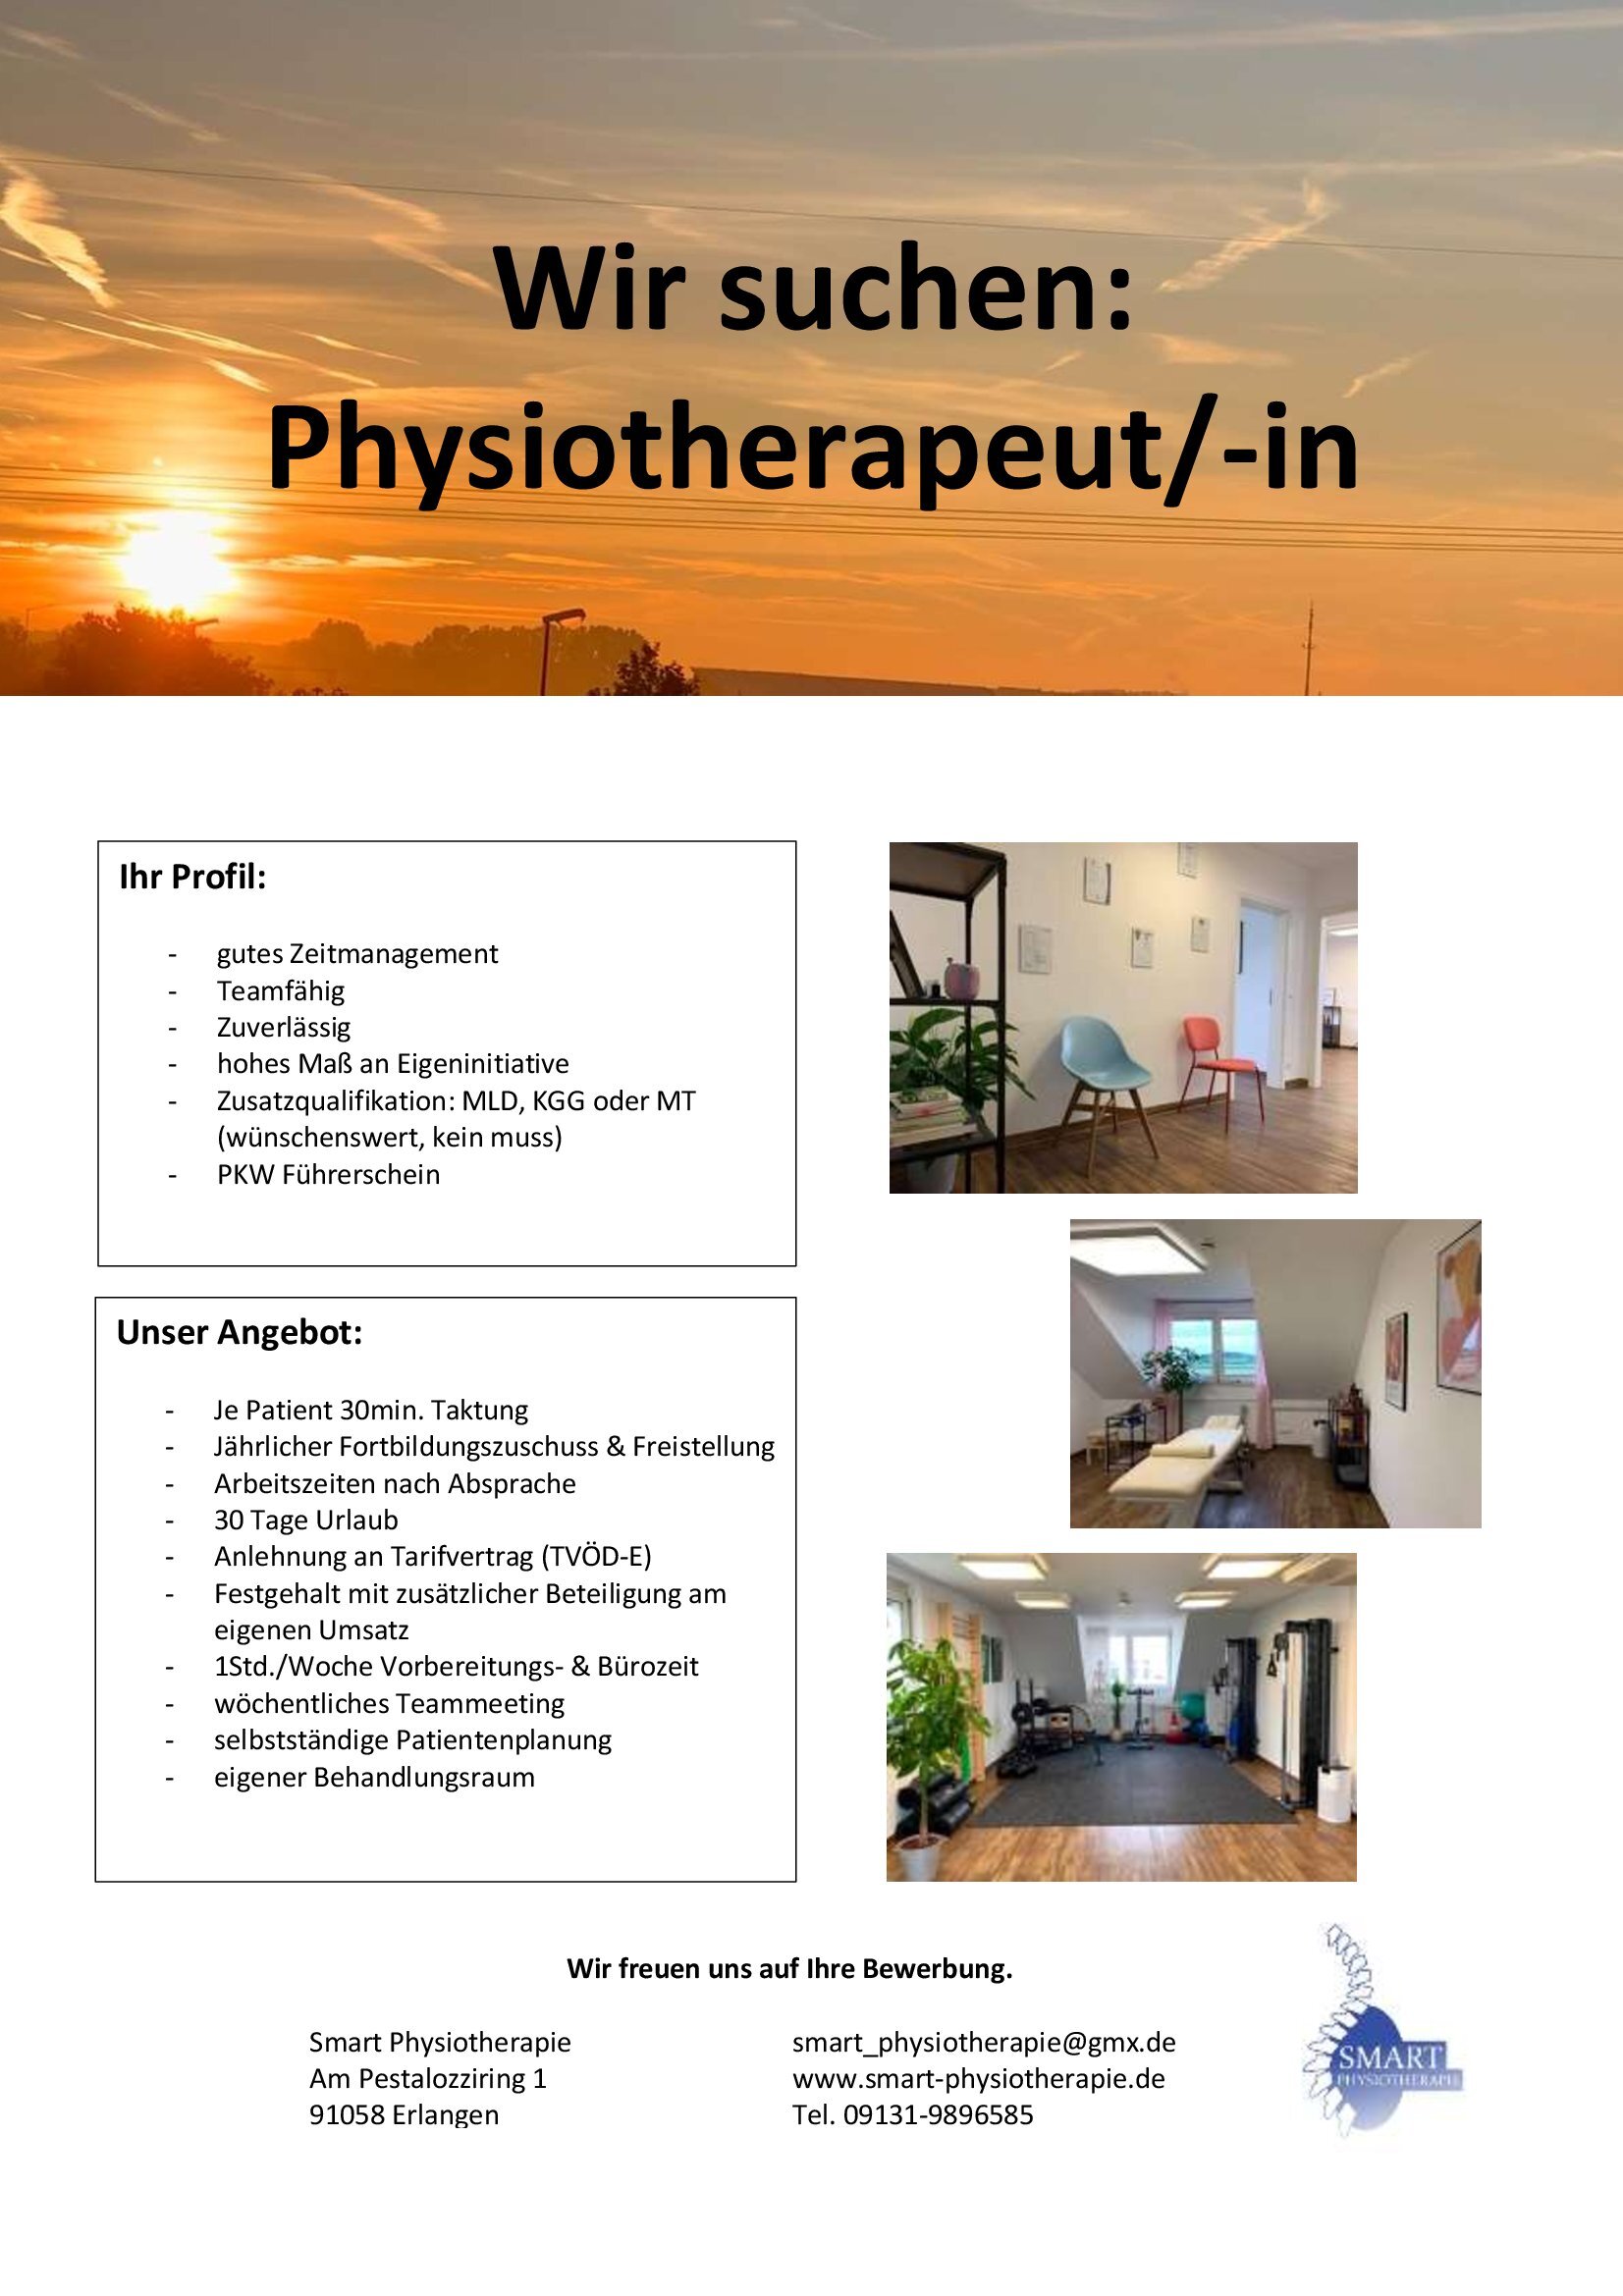 Wir suchen: Physiotherapeut/in, sofort für unsere Praxis, Smart Physiotherapie, in Erlangen-Eltersdorf, Am Pestalozziring 1.